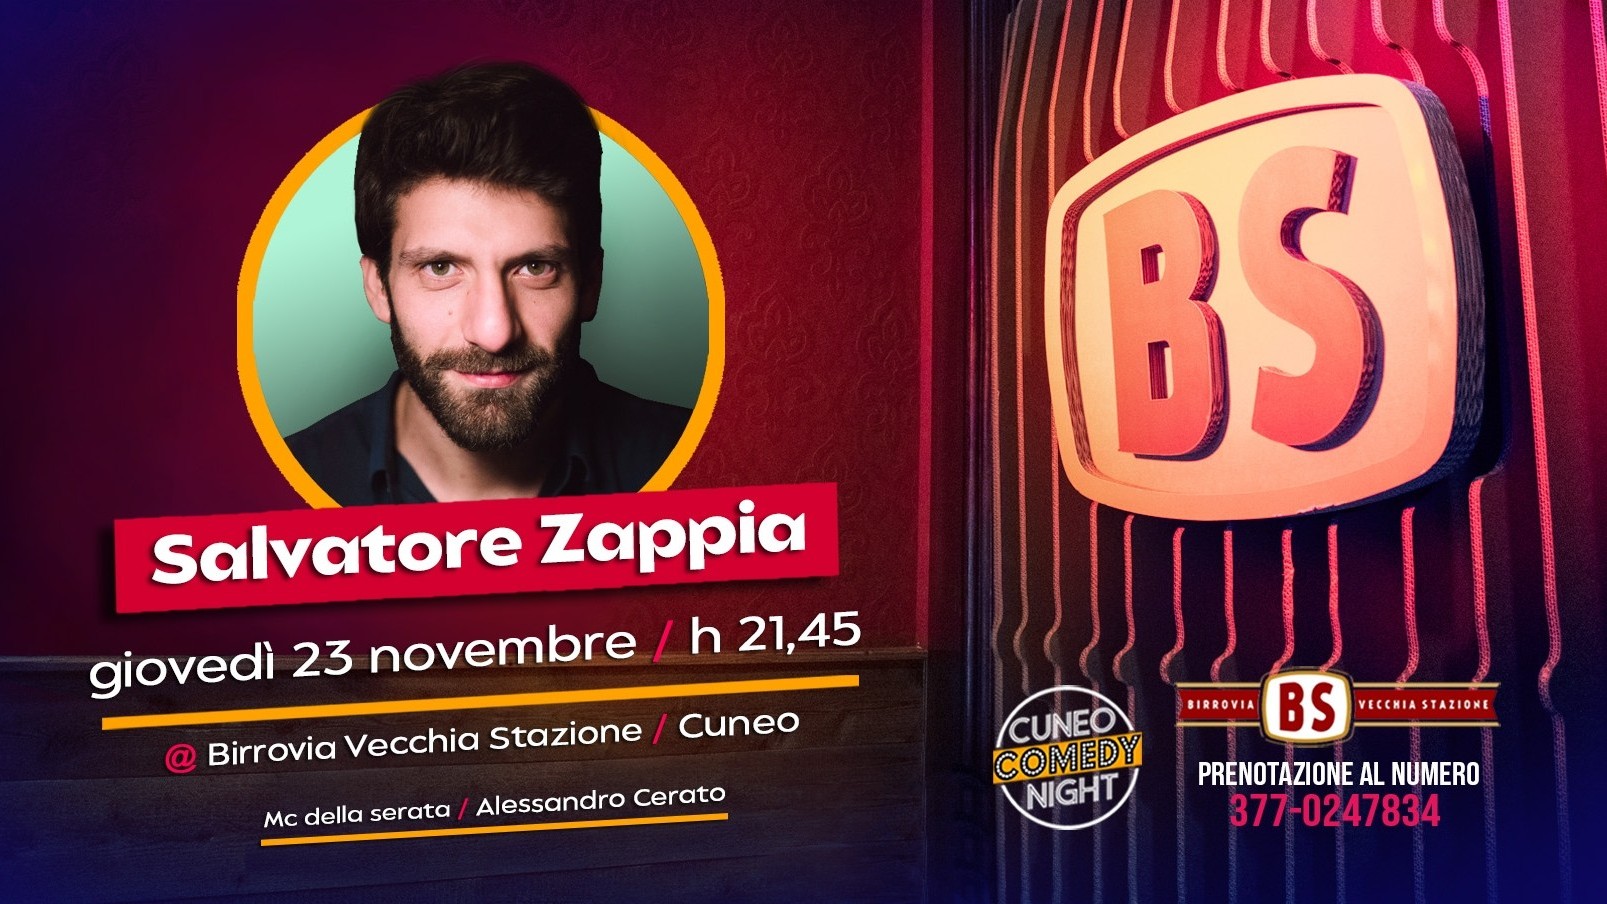 Salvatore Zappia - Cuneo Comedy Night